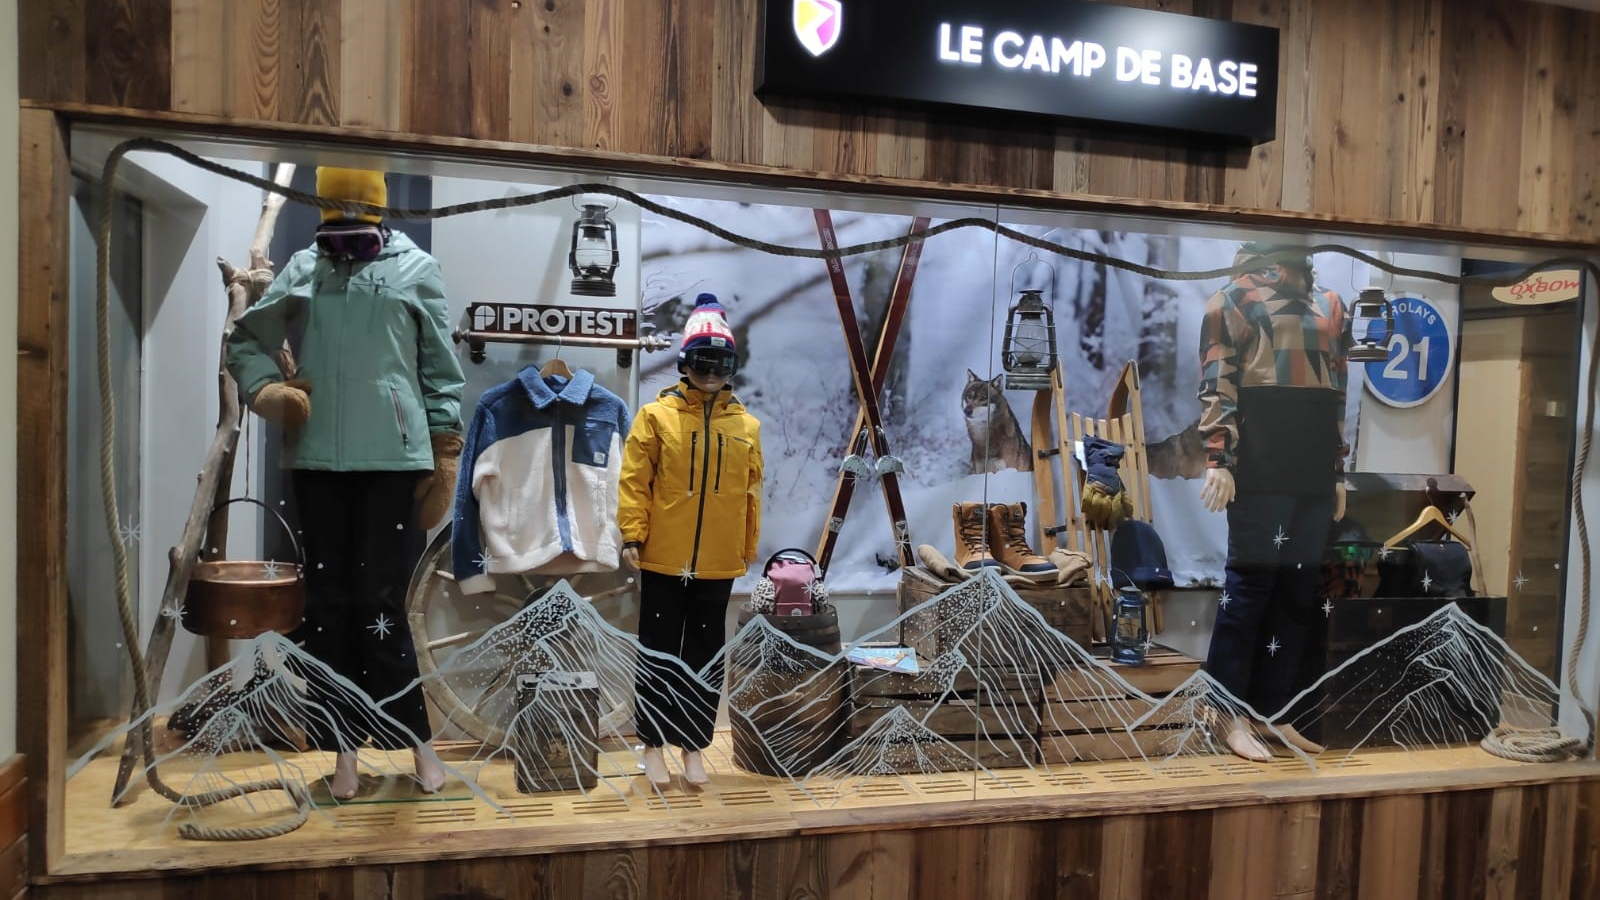 Ski republic - Base camp